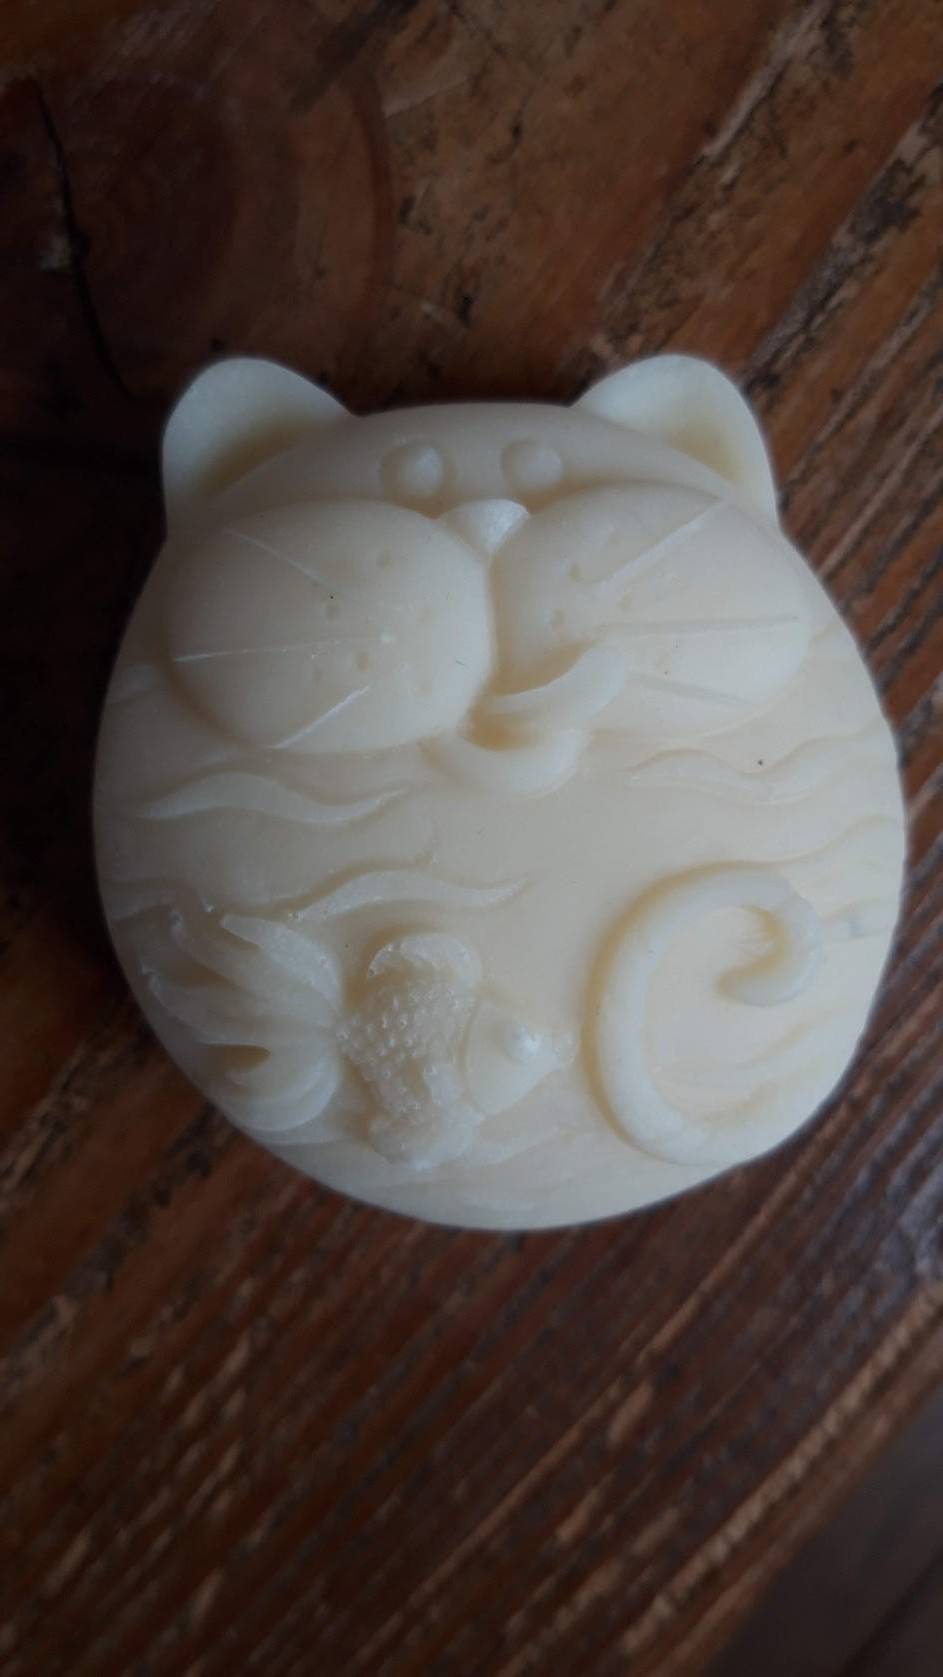 la valise à savons - savonnerie artisanale saponification à froid - savon fantaisie en forme de chat - savon rond - savon nourrissant au beurre de karité parfum fleur de coton 